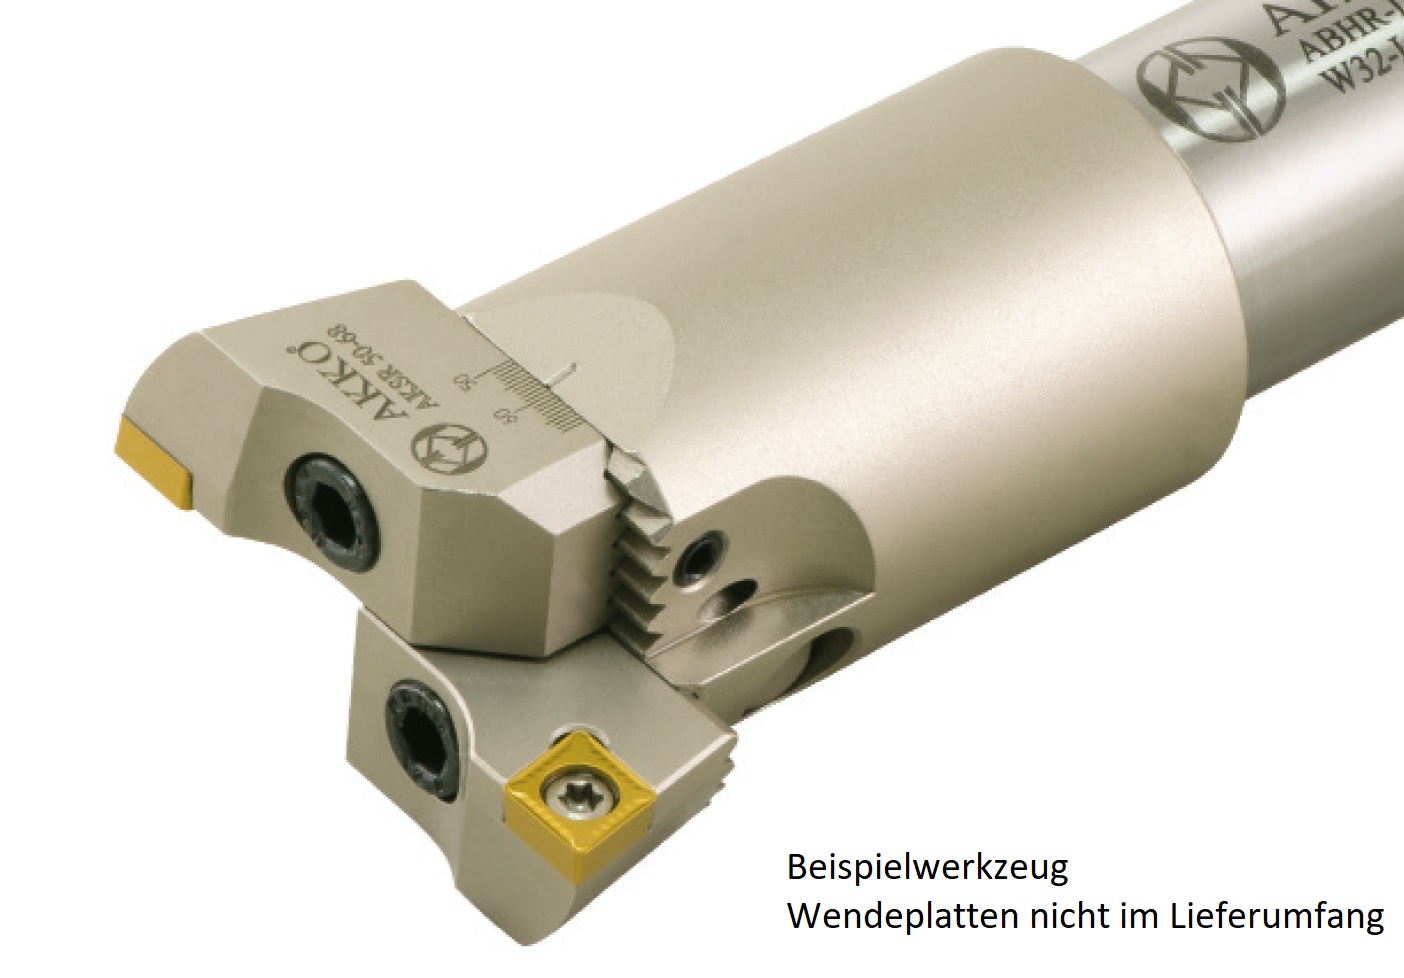 AKKO - Einstellbarer Schrupp-Spindelkopf ø 18-22 mm, Bohrtiefe 42 mm
kompatibel mit ISO CC.. 0602.., mit Innenkühlung